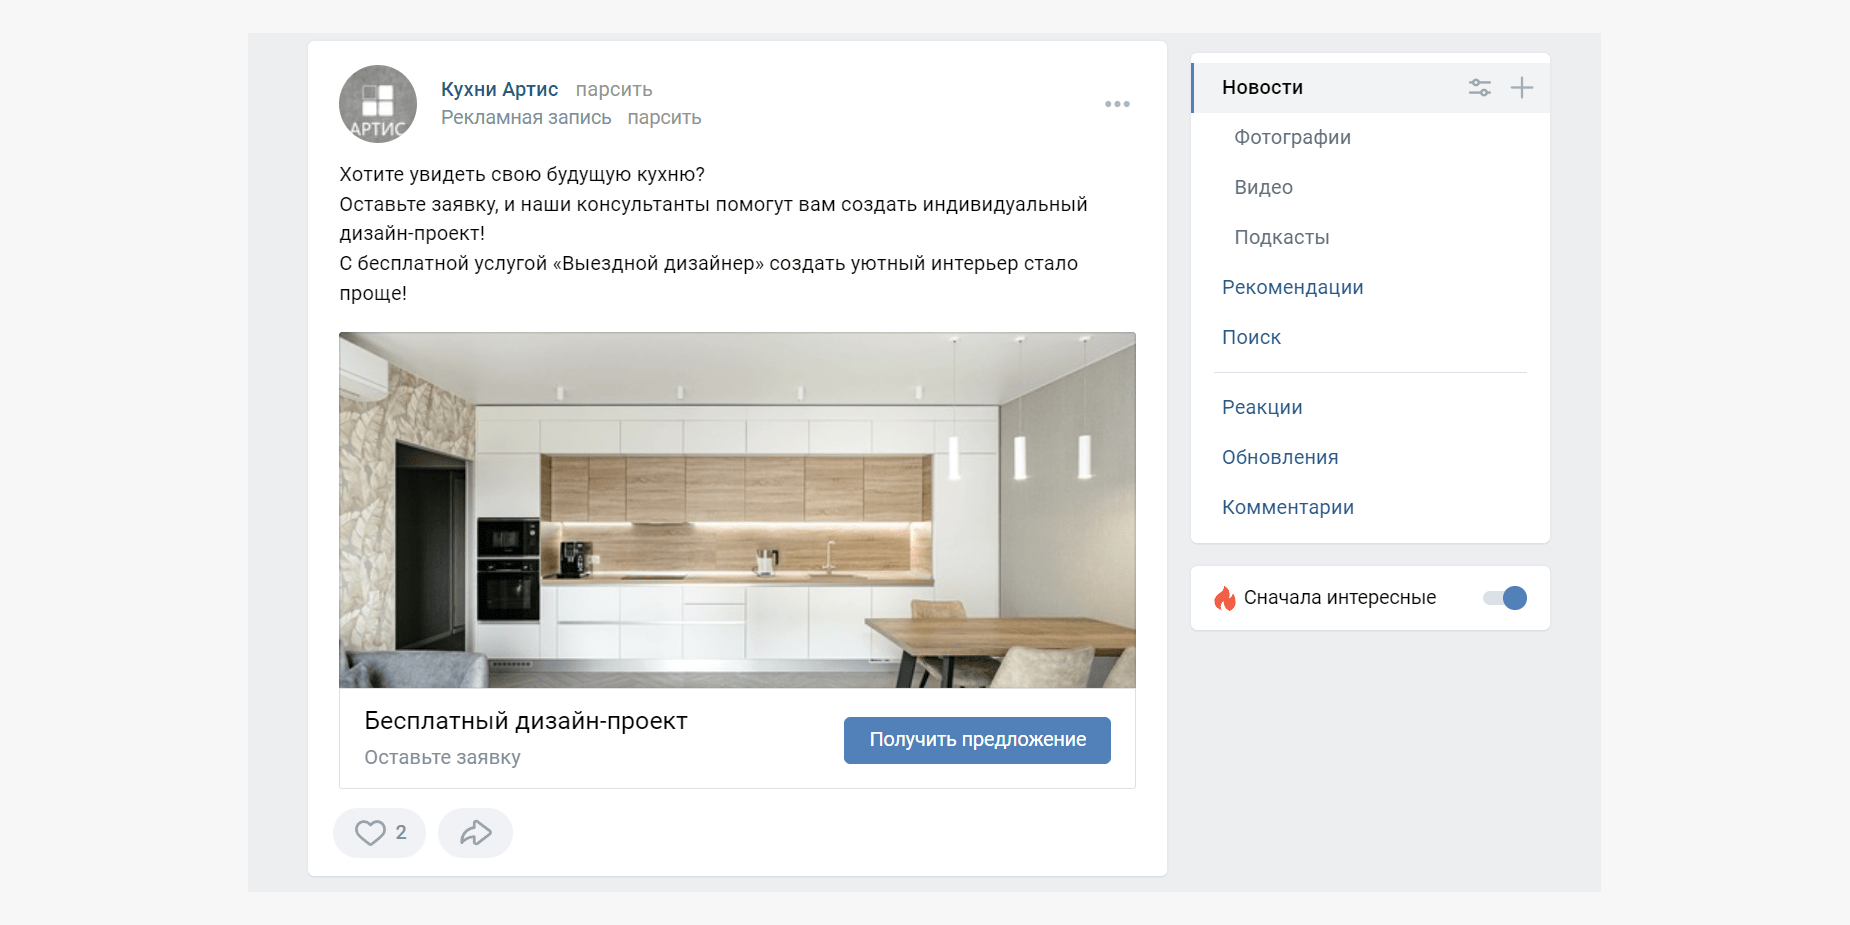 Здесь мы видим посыл про будущее – пользователям предлагают посмотреть, как будет выглядеть их кухня